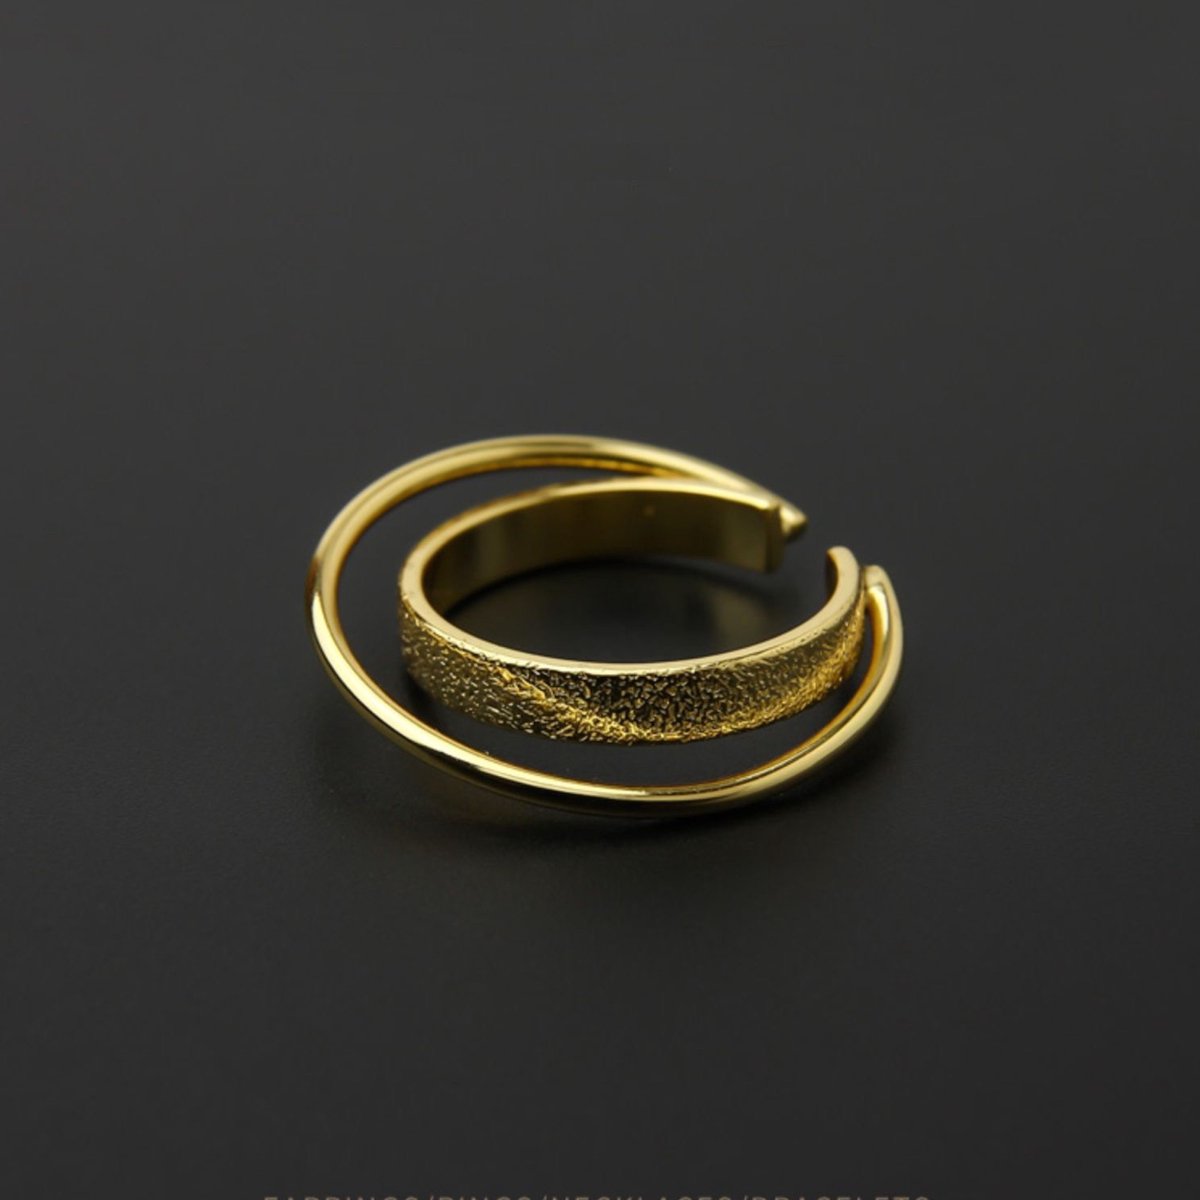 Sterrenwolk-Minimaal ontwerp dubbele cirkel ringen-Goud vermeil